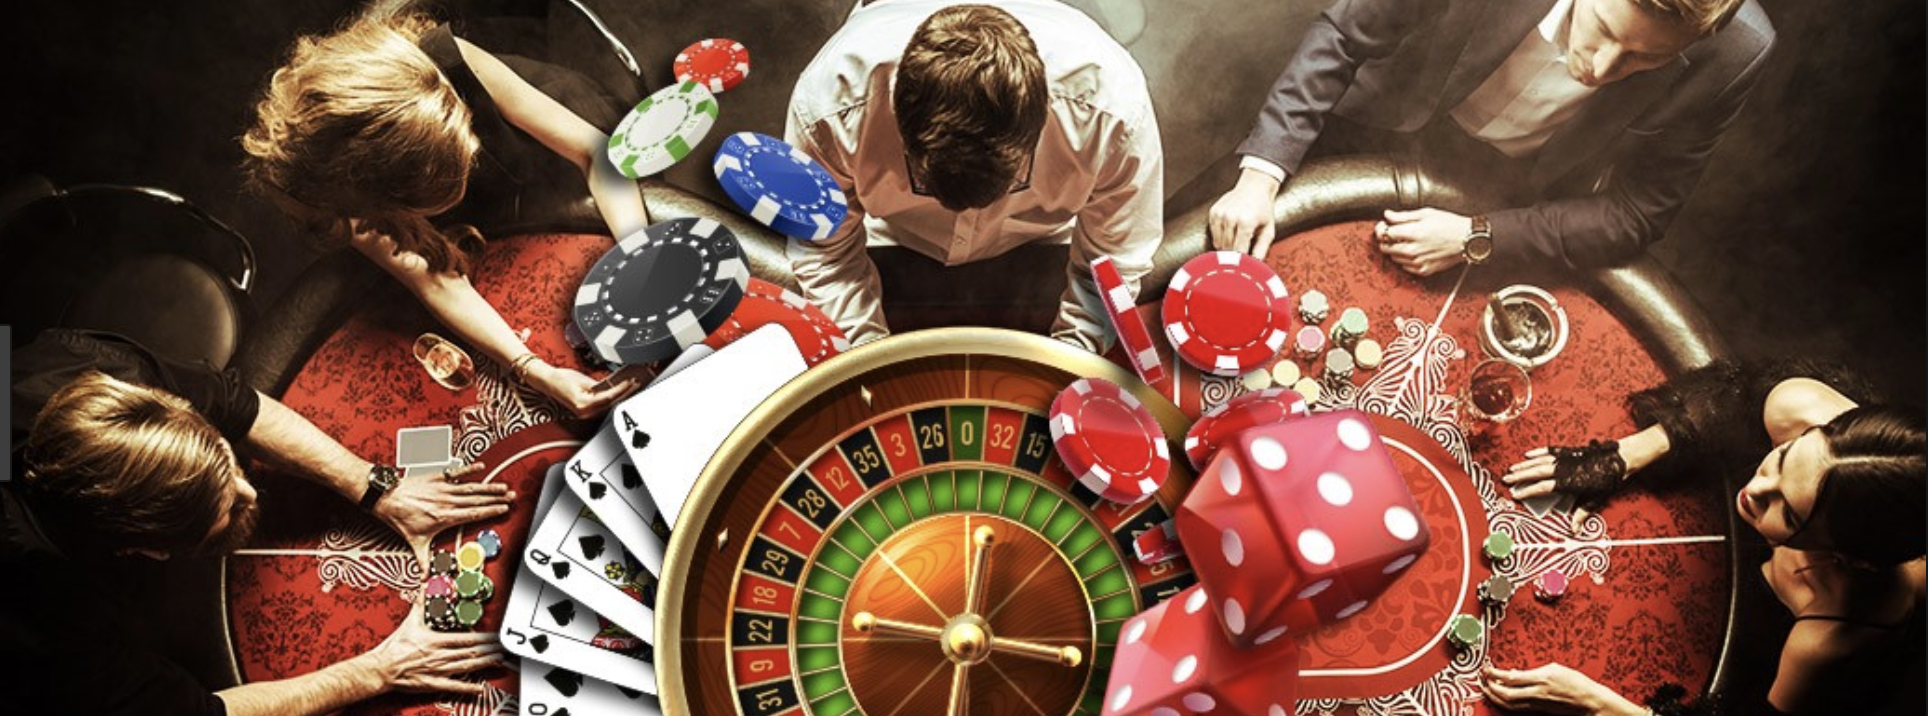 Время азартными играми. Зависимость от азартных игр. Казино коллаж. Игровая зависимость казино. Пристрастие к азартным играм.